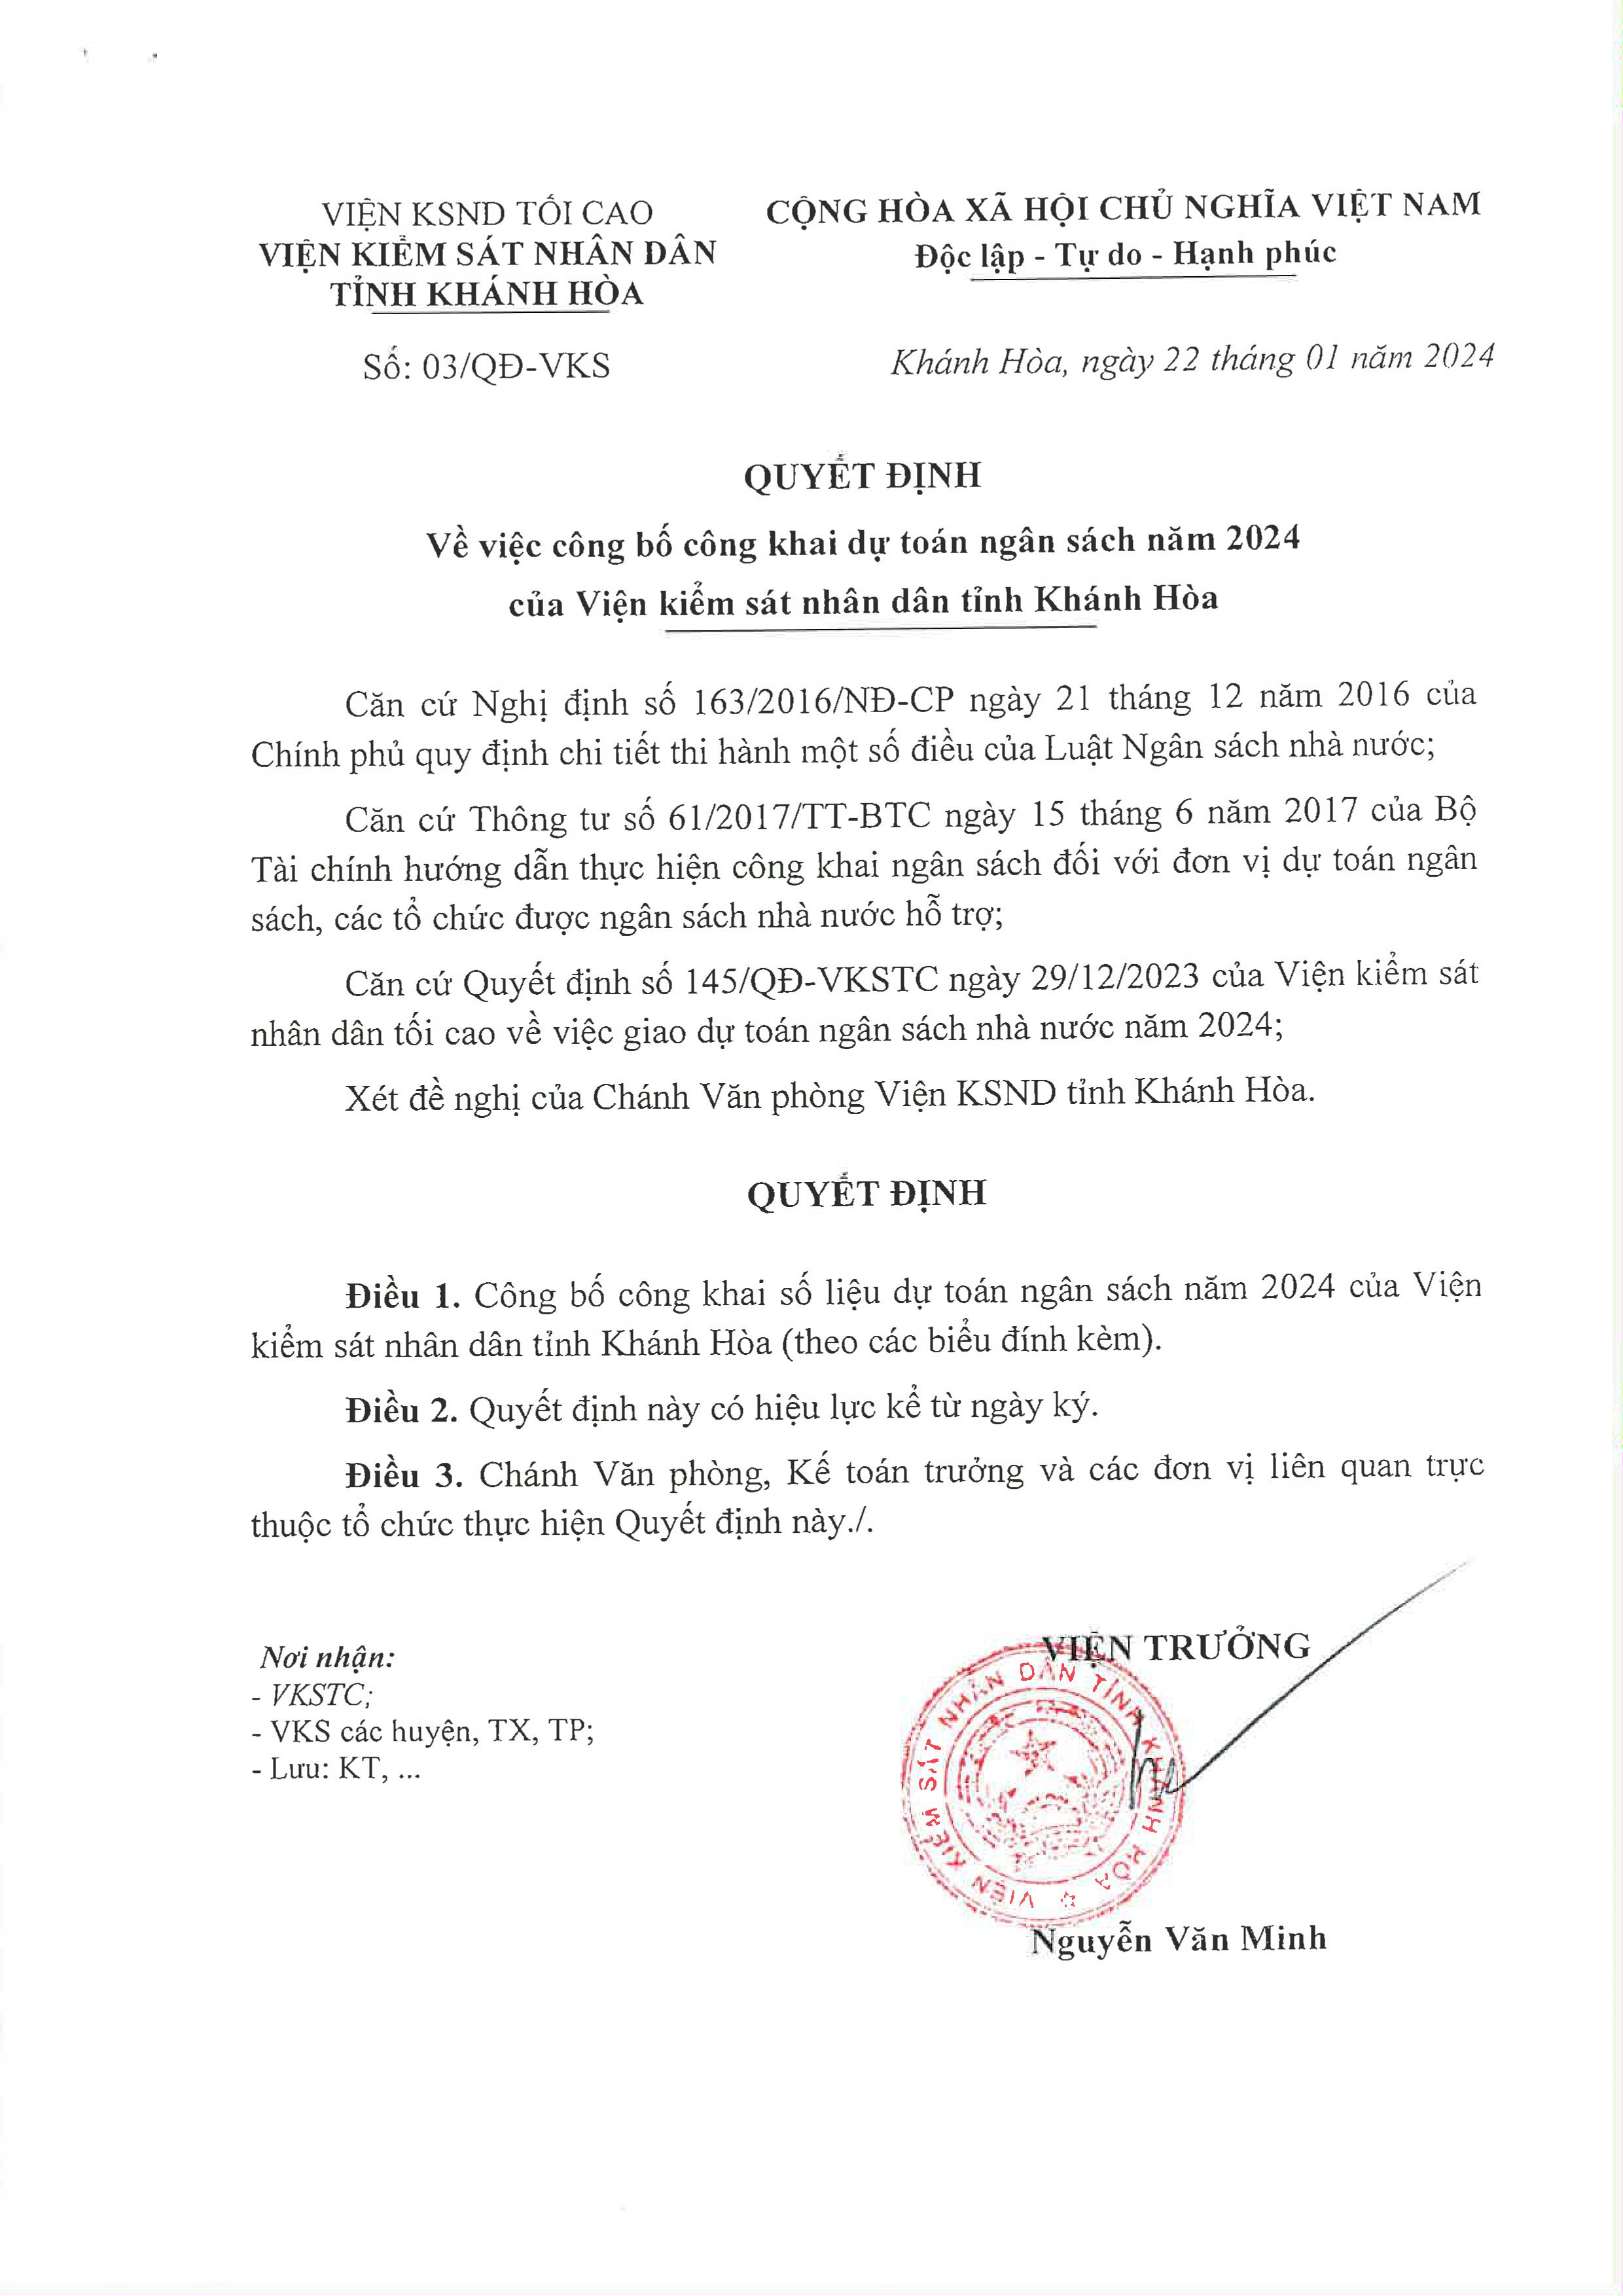 Công bố công khai dự toán ngân sách năm 2024 của Viện kiểm sát nhân dân tỉnh Khánh Hòa